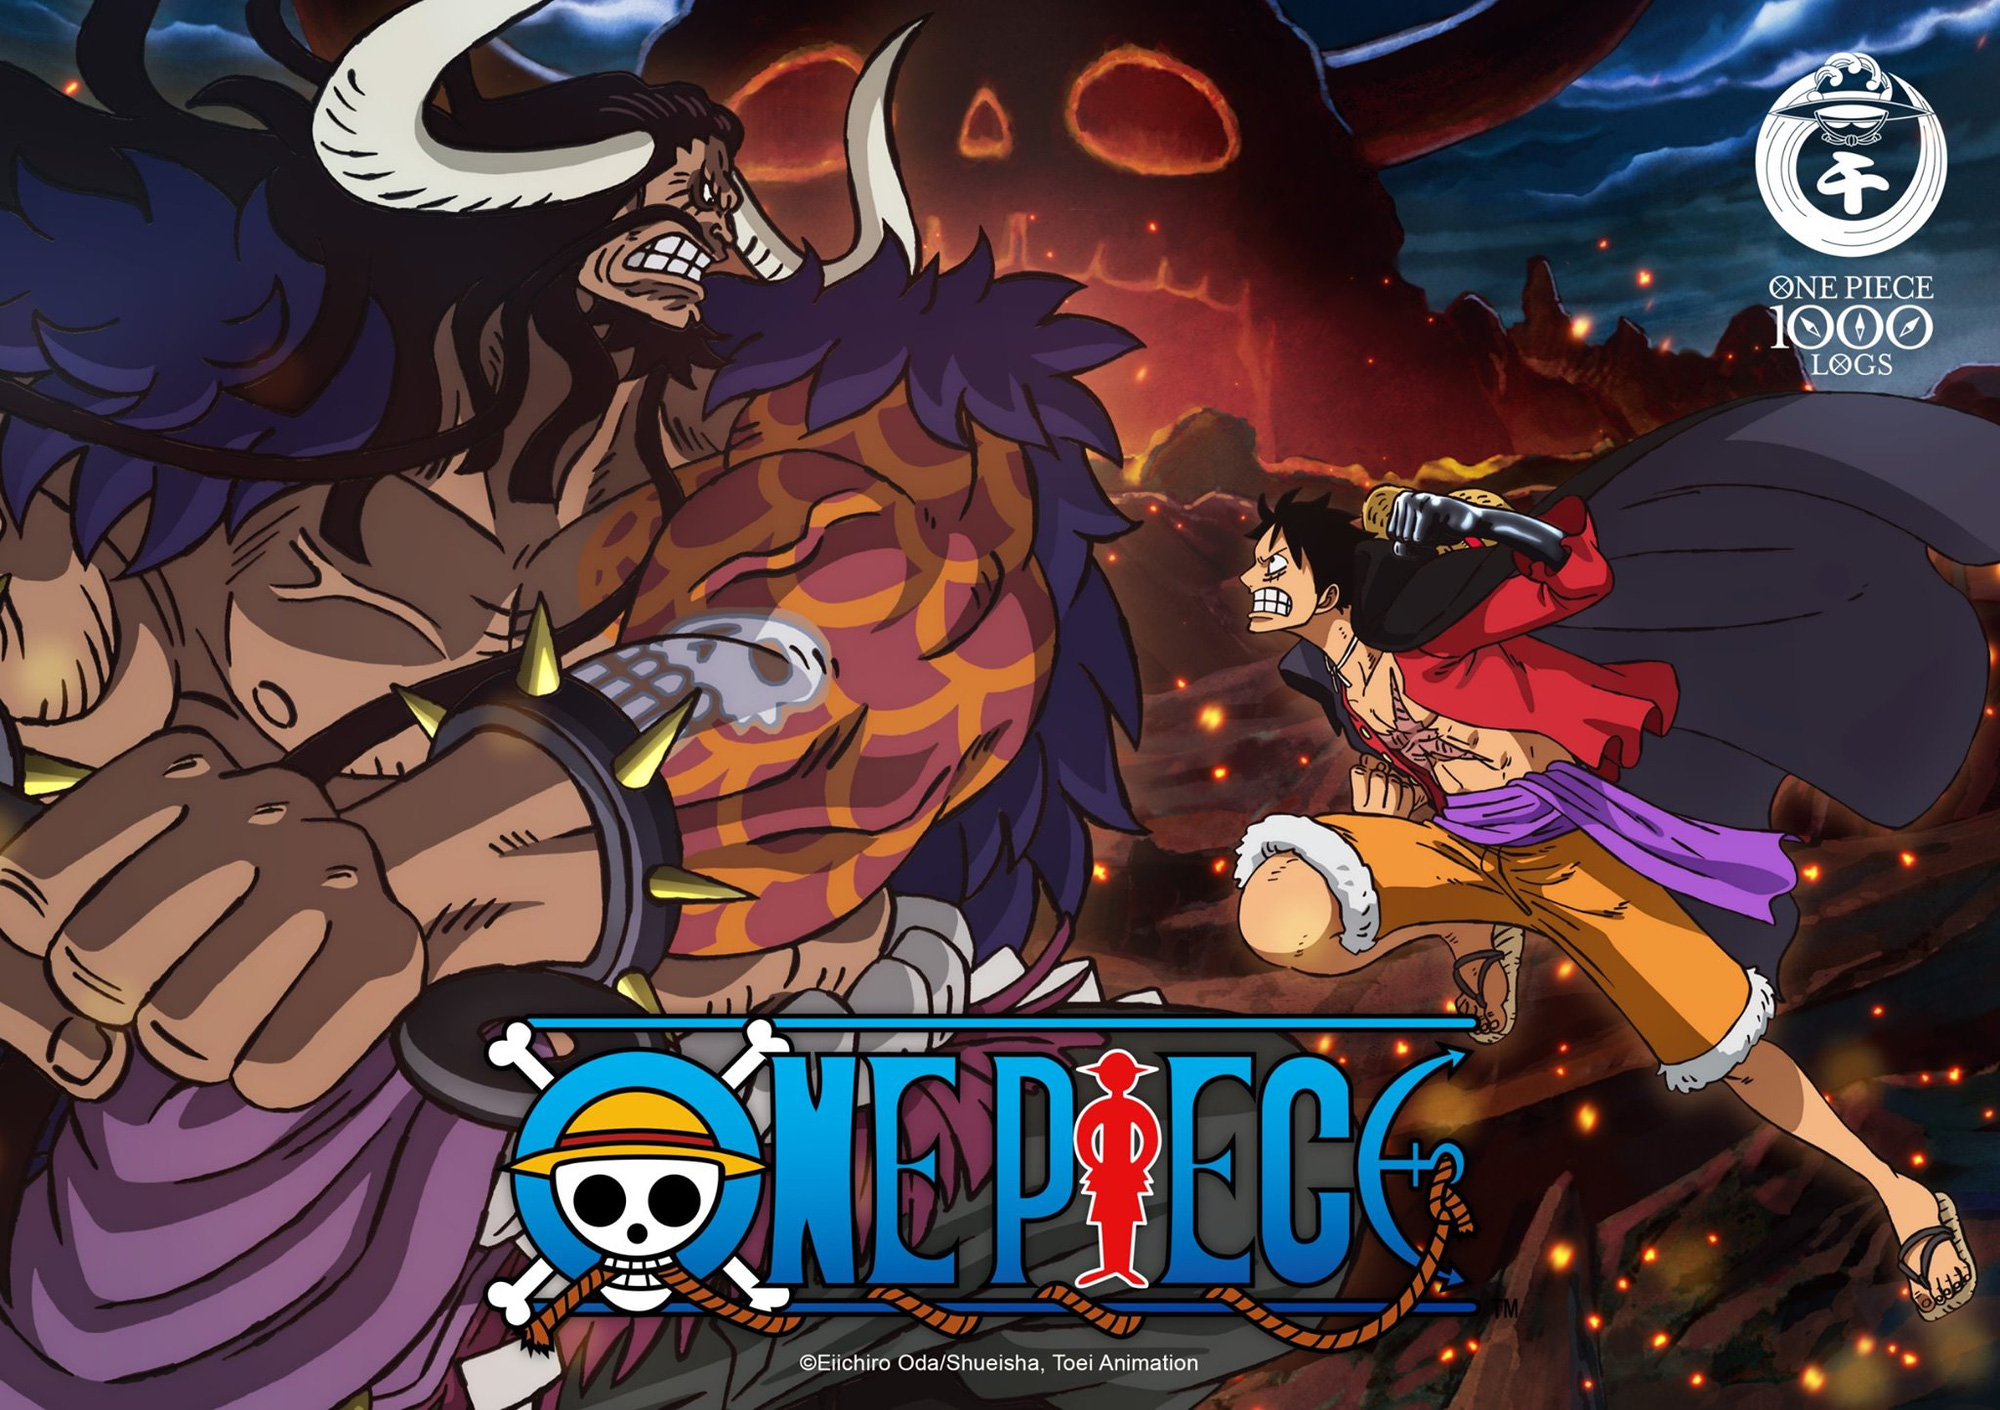 Giải mã sức hút của One Piece - thương hiệu manga bán chạy nhất mọi thời đại